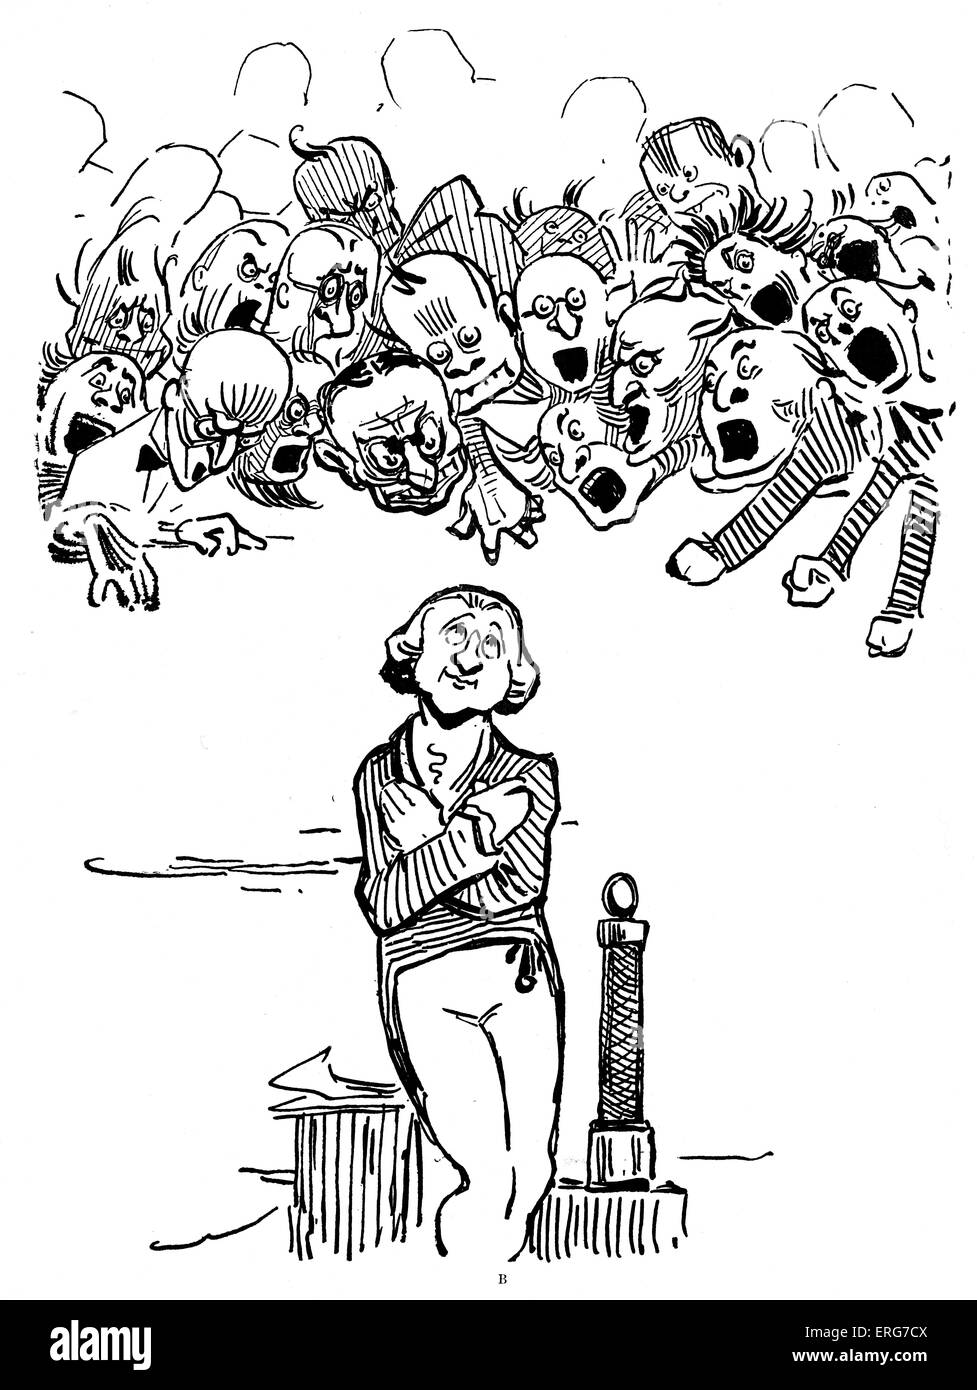 Sir Humphrey Davy durch Gilbert Keith Chesterton. Die begleitende Vers liest "Sir Humphrey Davy / gar Soße. Er lebte in dem Odium / Natrium entdeckt zu haben ". HD: Britische Chemiker und Erfinder, 17. Dezember 1778 – 29. Mai 1829. GKC: Englischer Schriftsteller und Illustrator, 29. Mai 1874 – 14. Juni 1936. Stockfoto